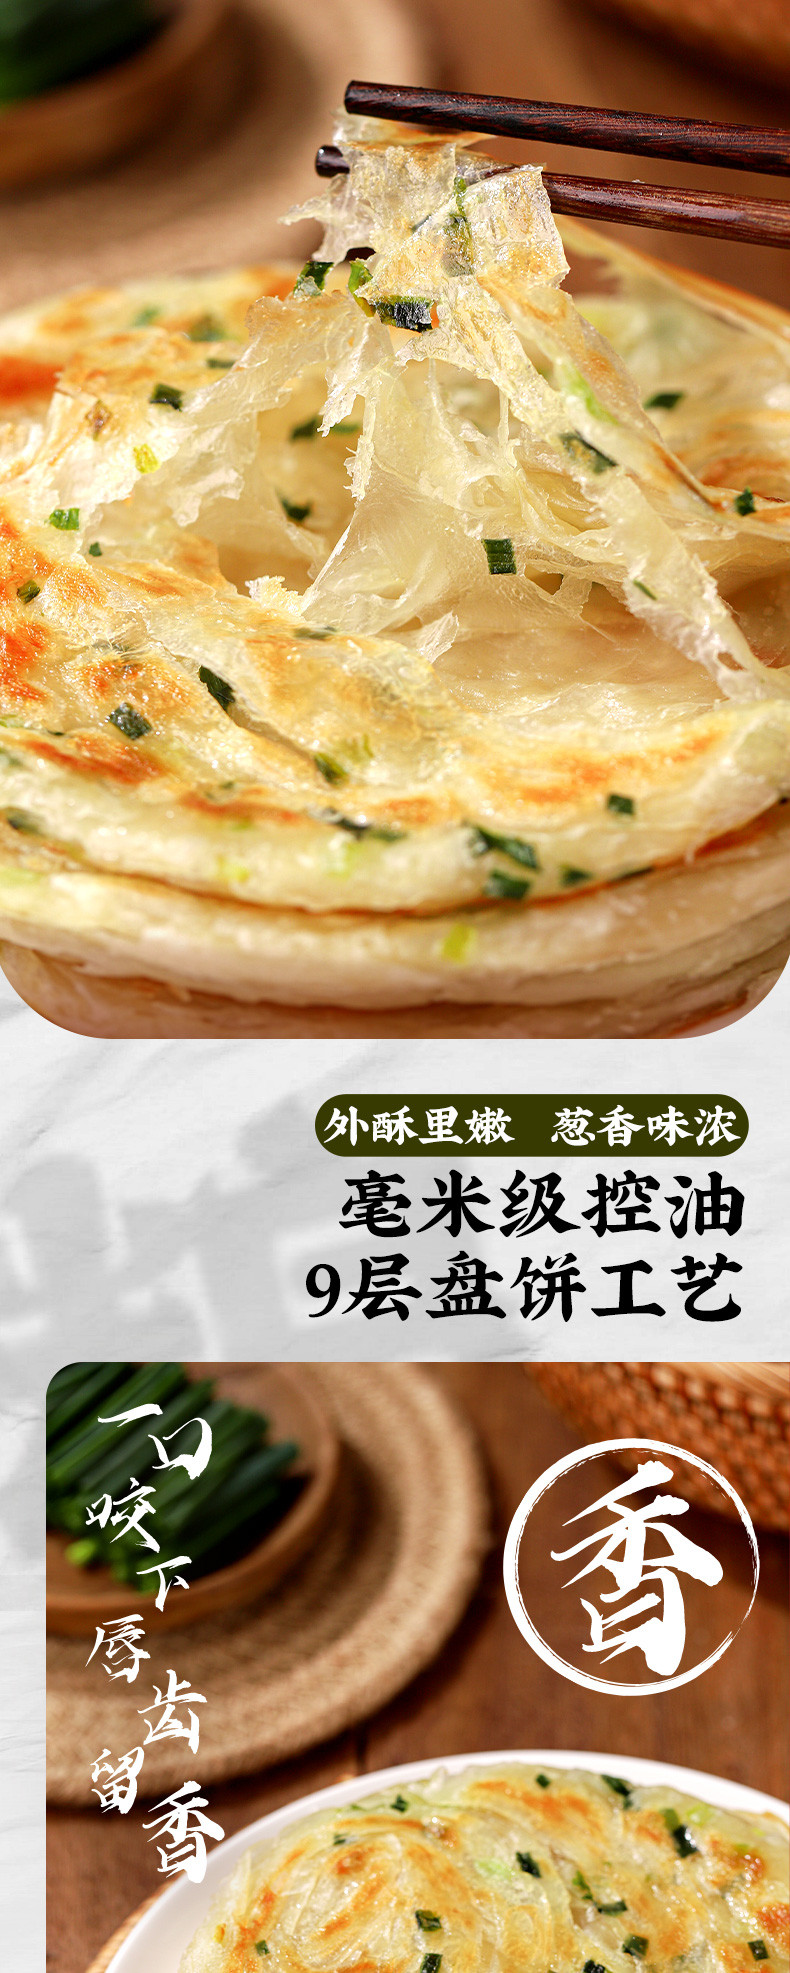 美粮坊 正宗老上海风味葱油饼手抓饼半成品90g/每片